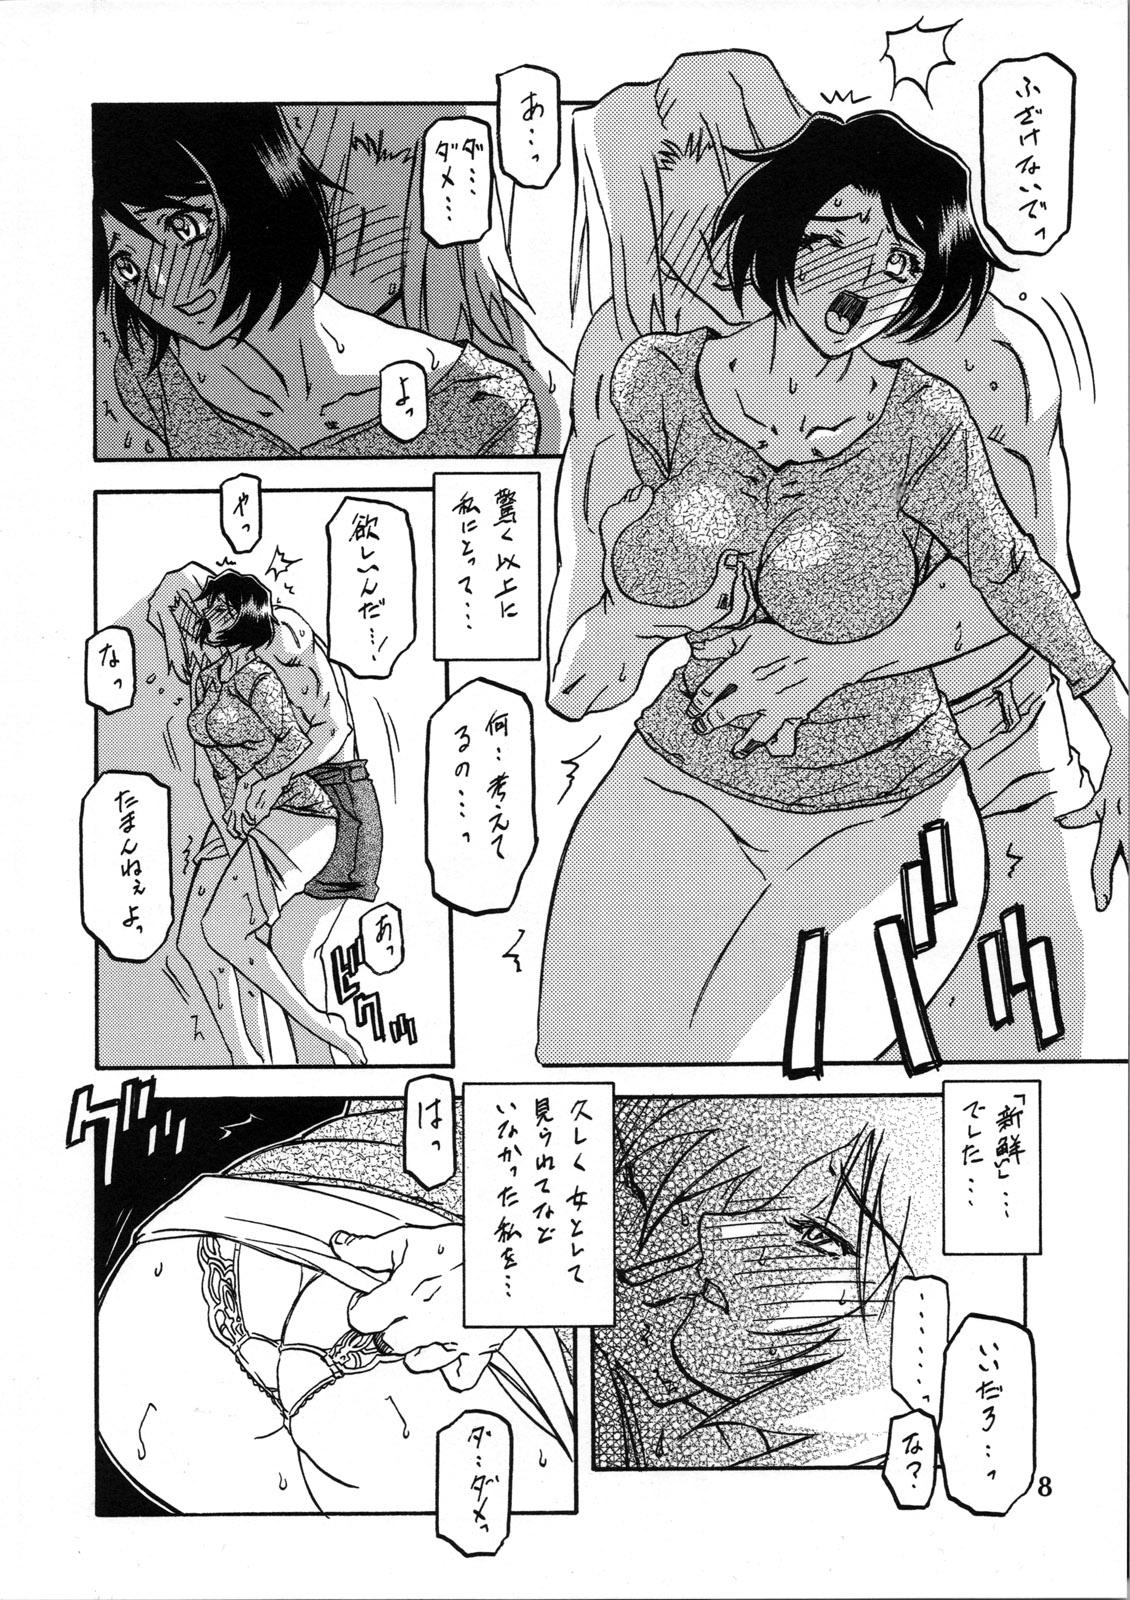 Asiansex Akebi no Mi - Satomi Katei - Akebi no mi Stepfather - Page 7